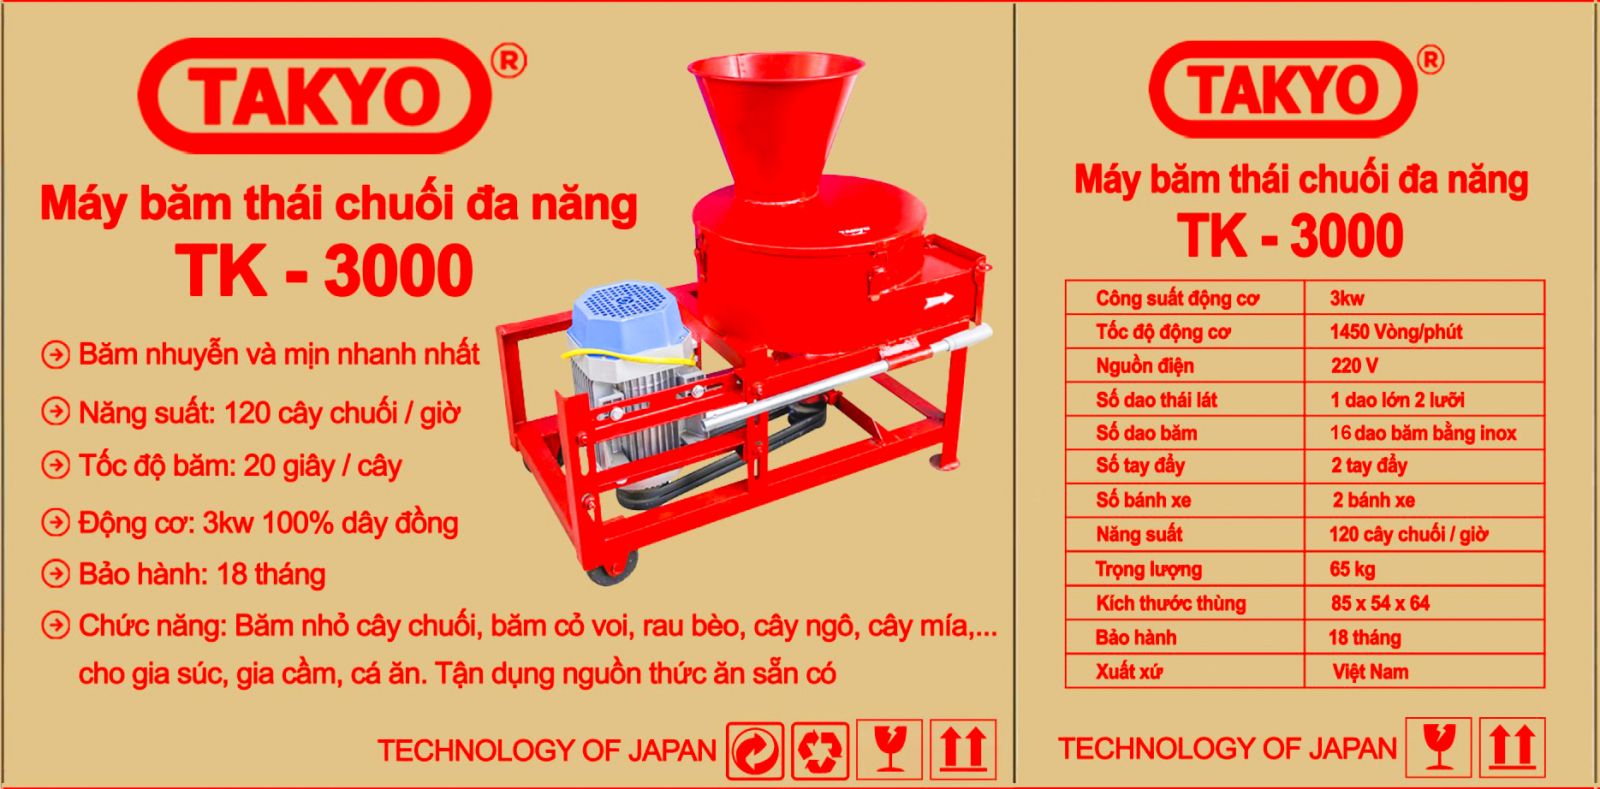 Thông số kỹ thuật máy xay cây chuối Takyo TK3000